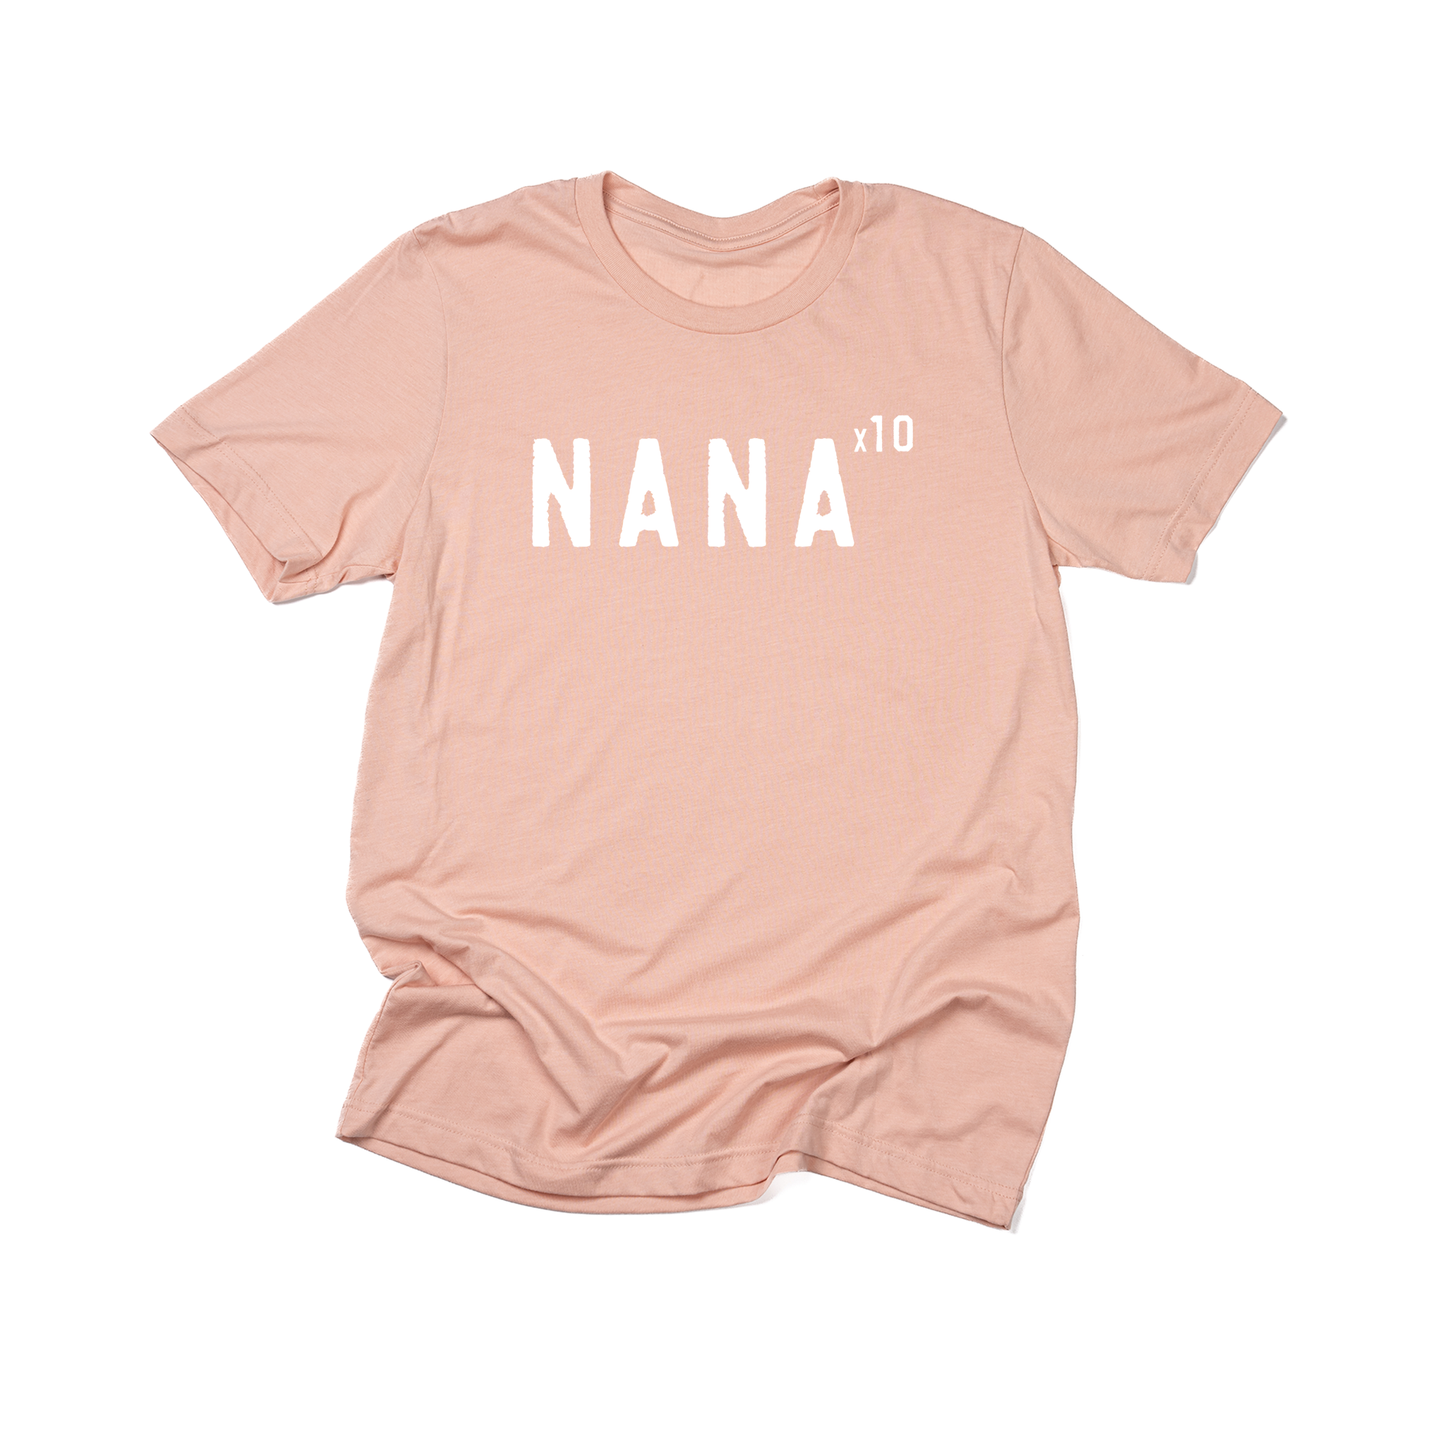 Nana x10 (Customizable, White) - Tee (Peach)